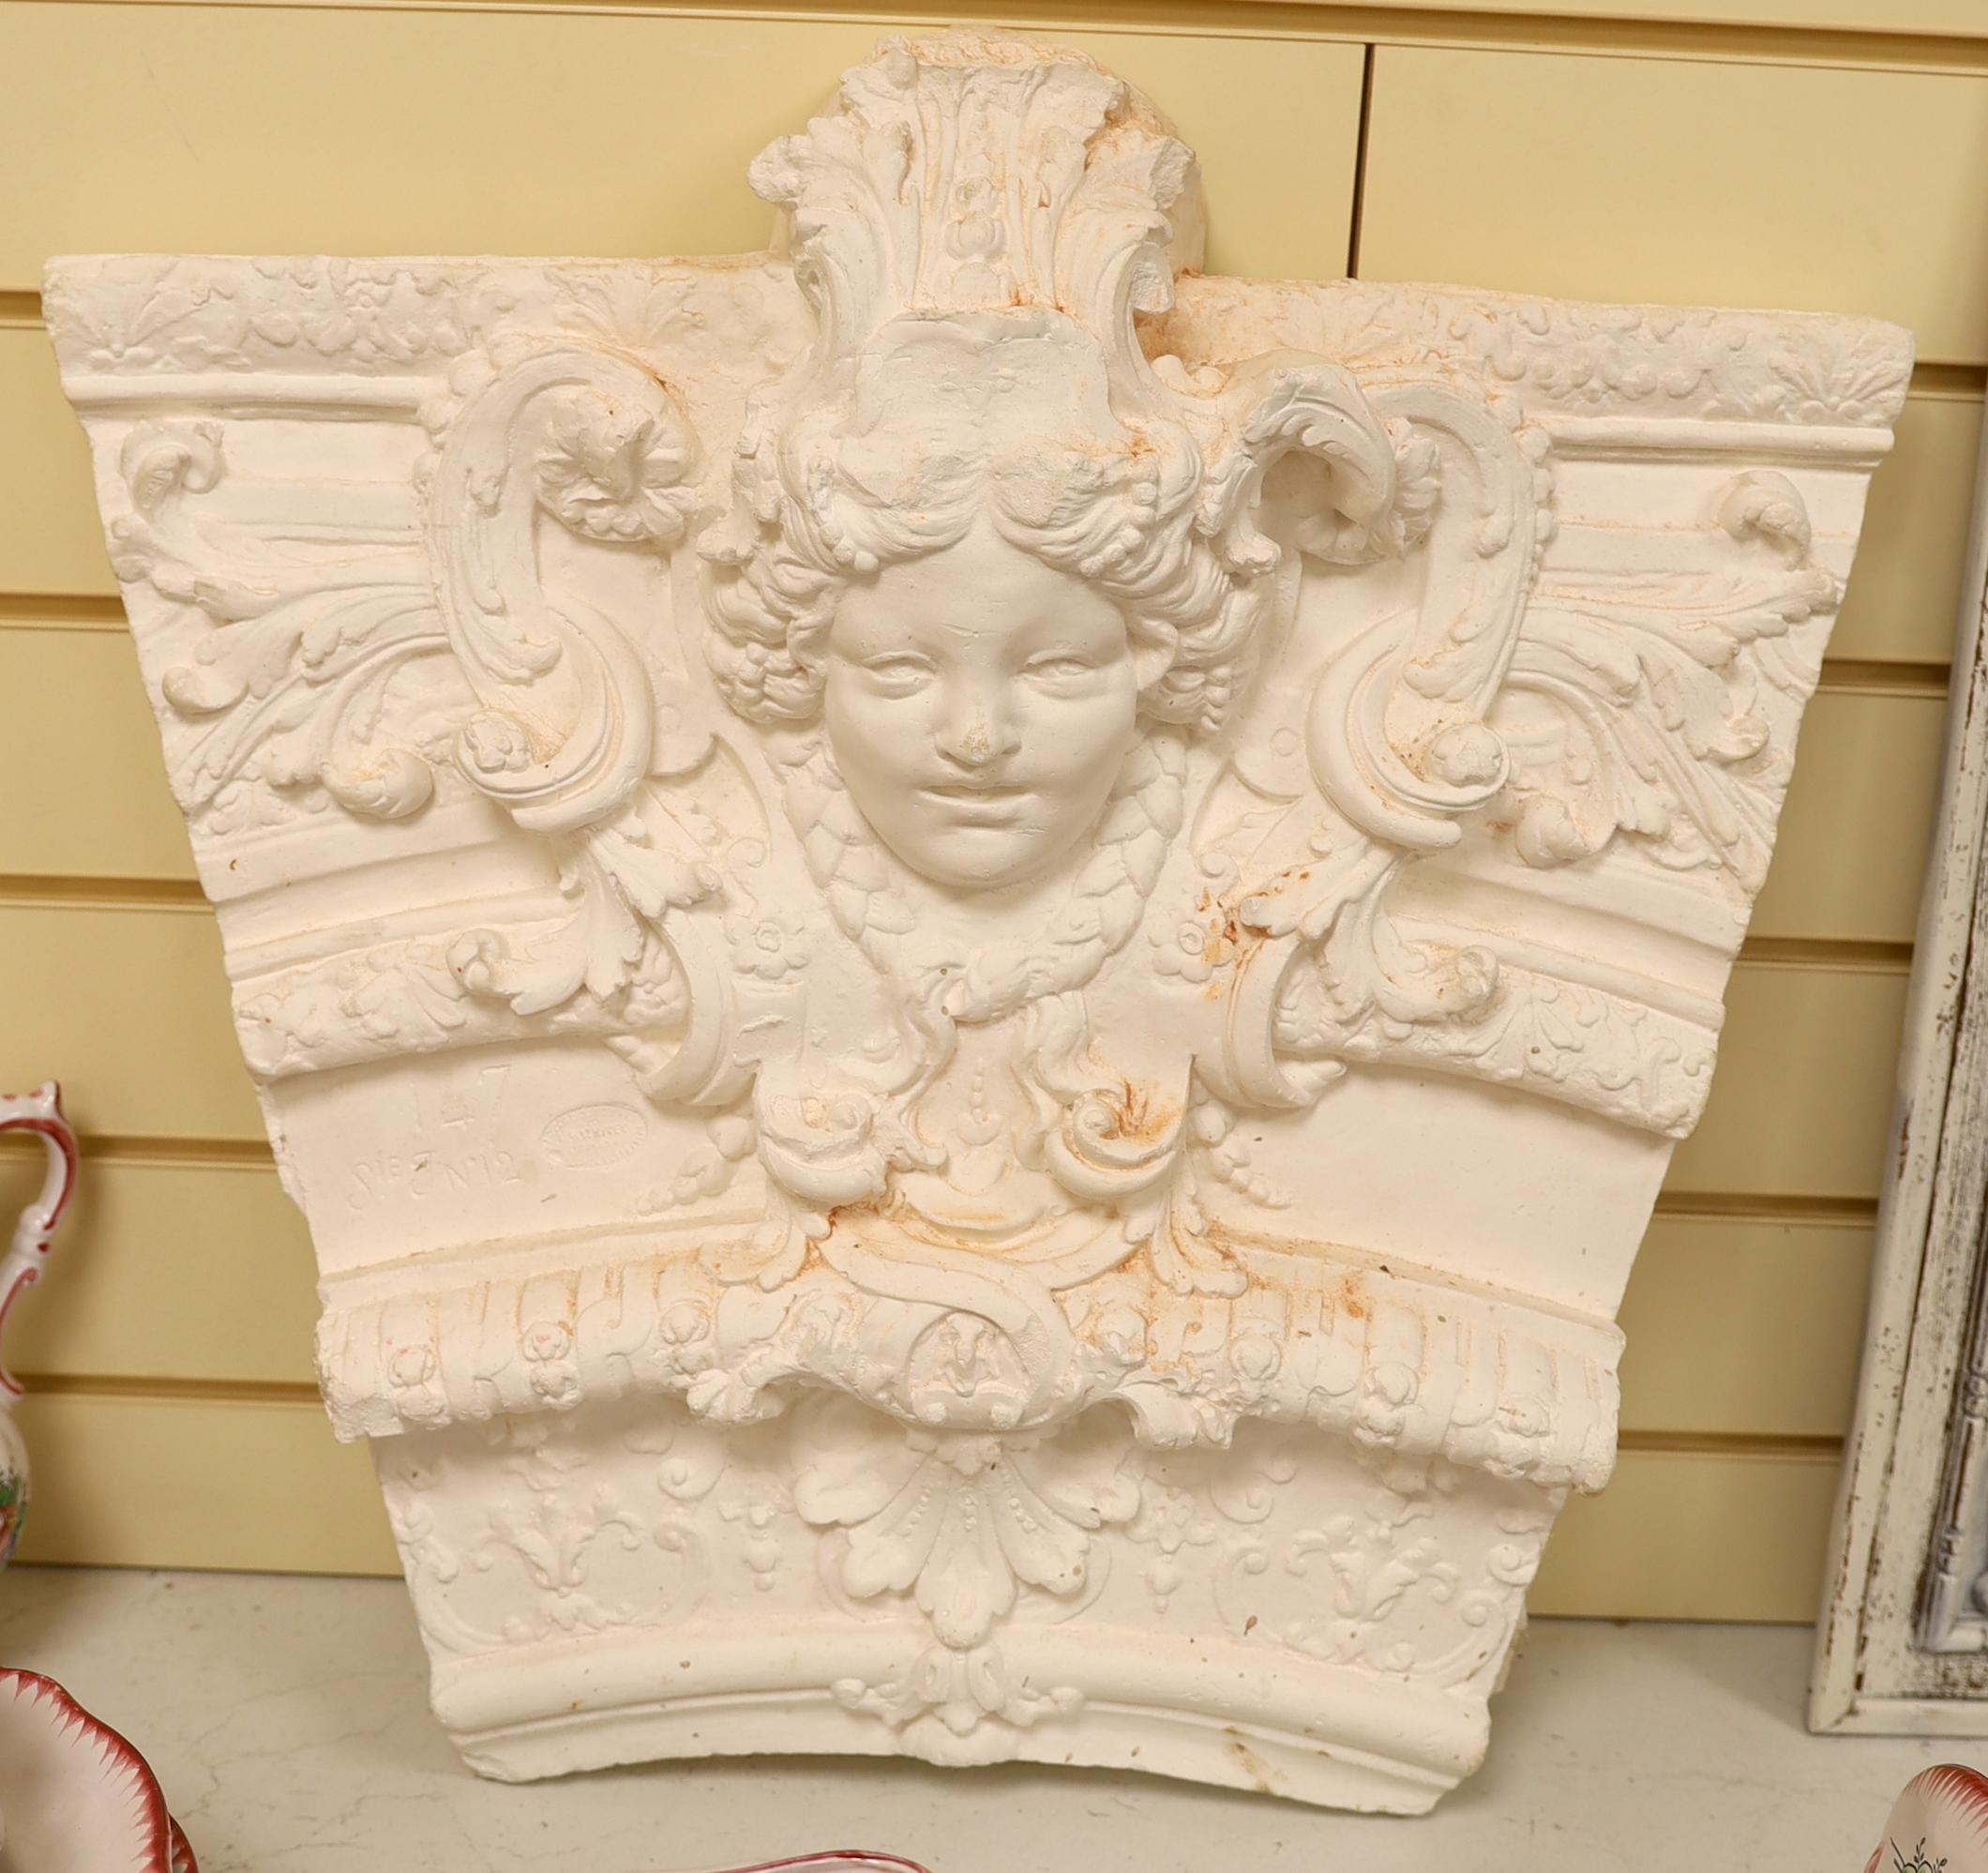 A 20th century plaster cast of a keystone, 50cm wide, 55cm high